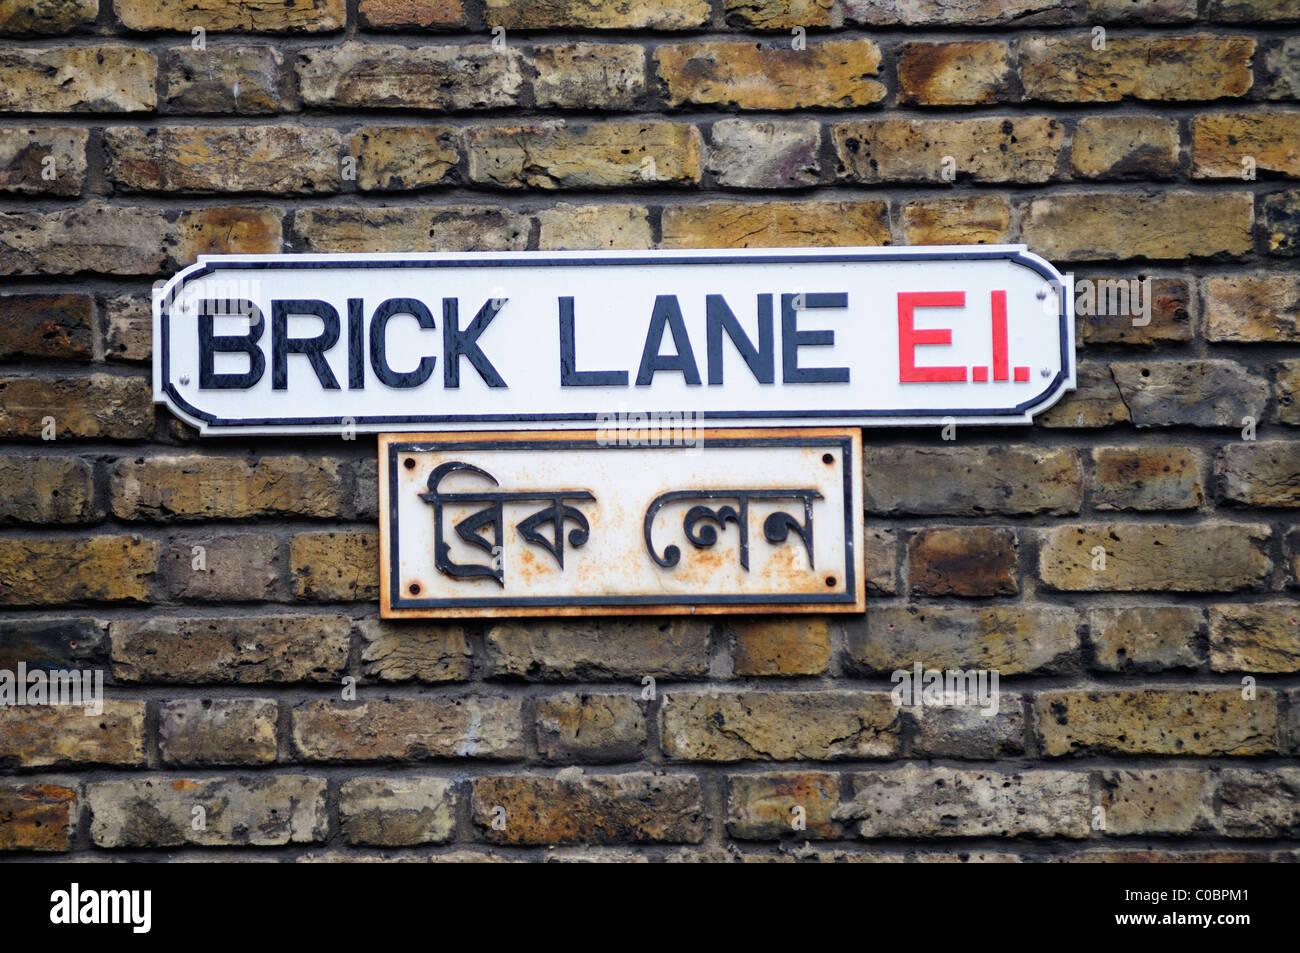 Bilingual Brick Lane E1 strada segno, London, England, Regno Unito Foto Stock